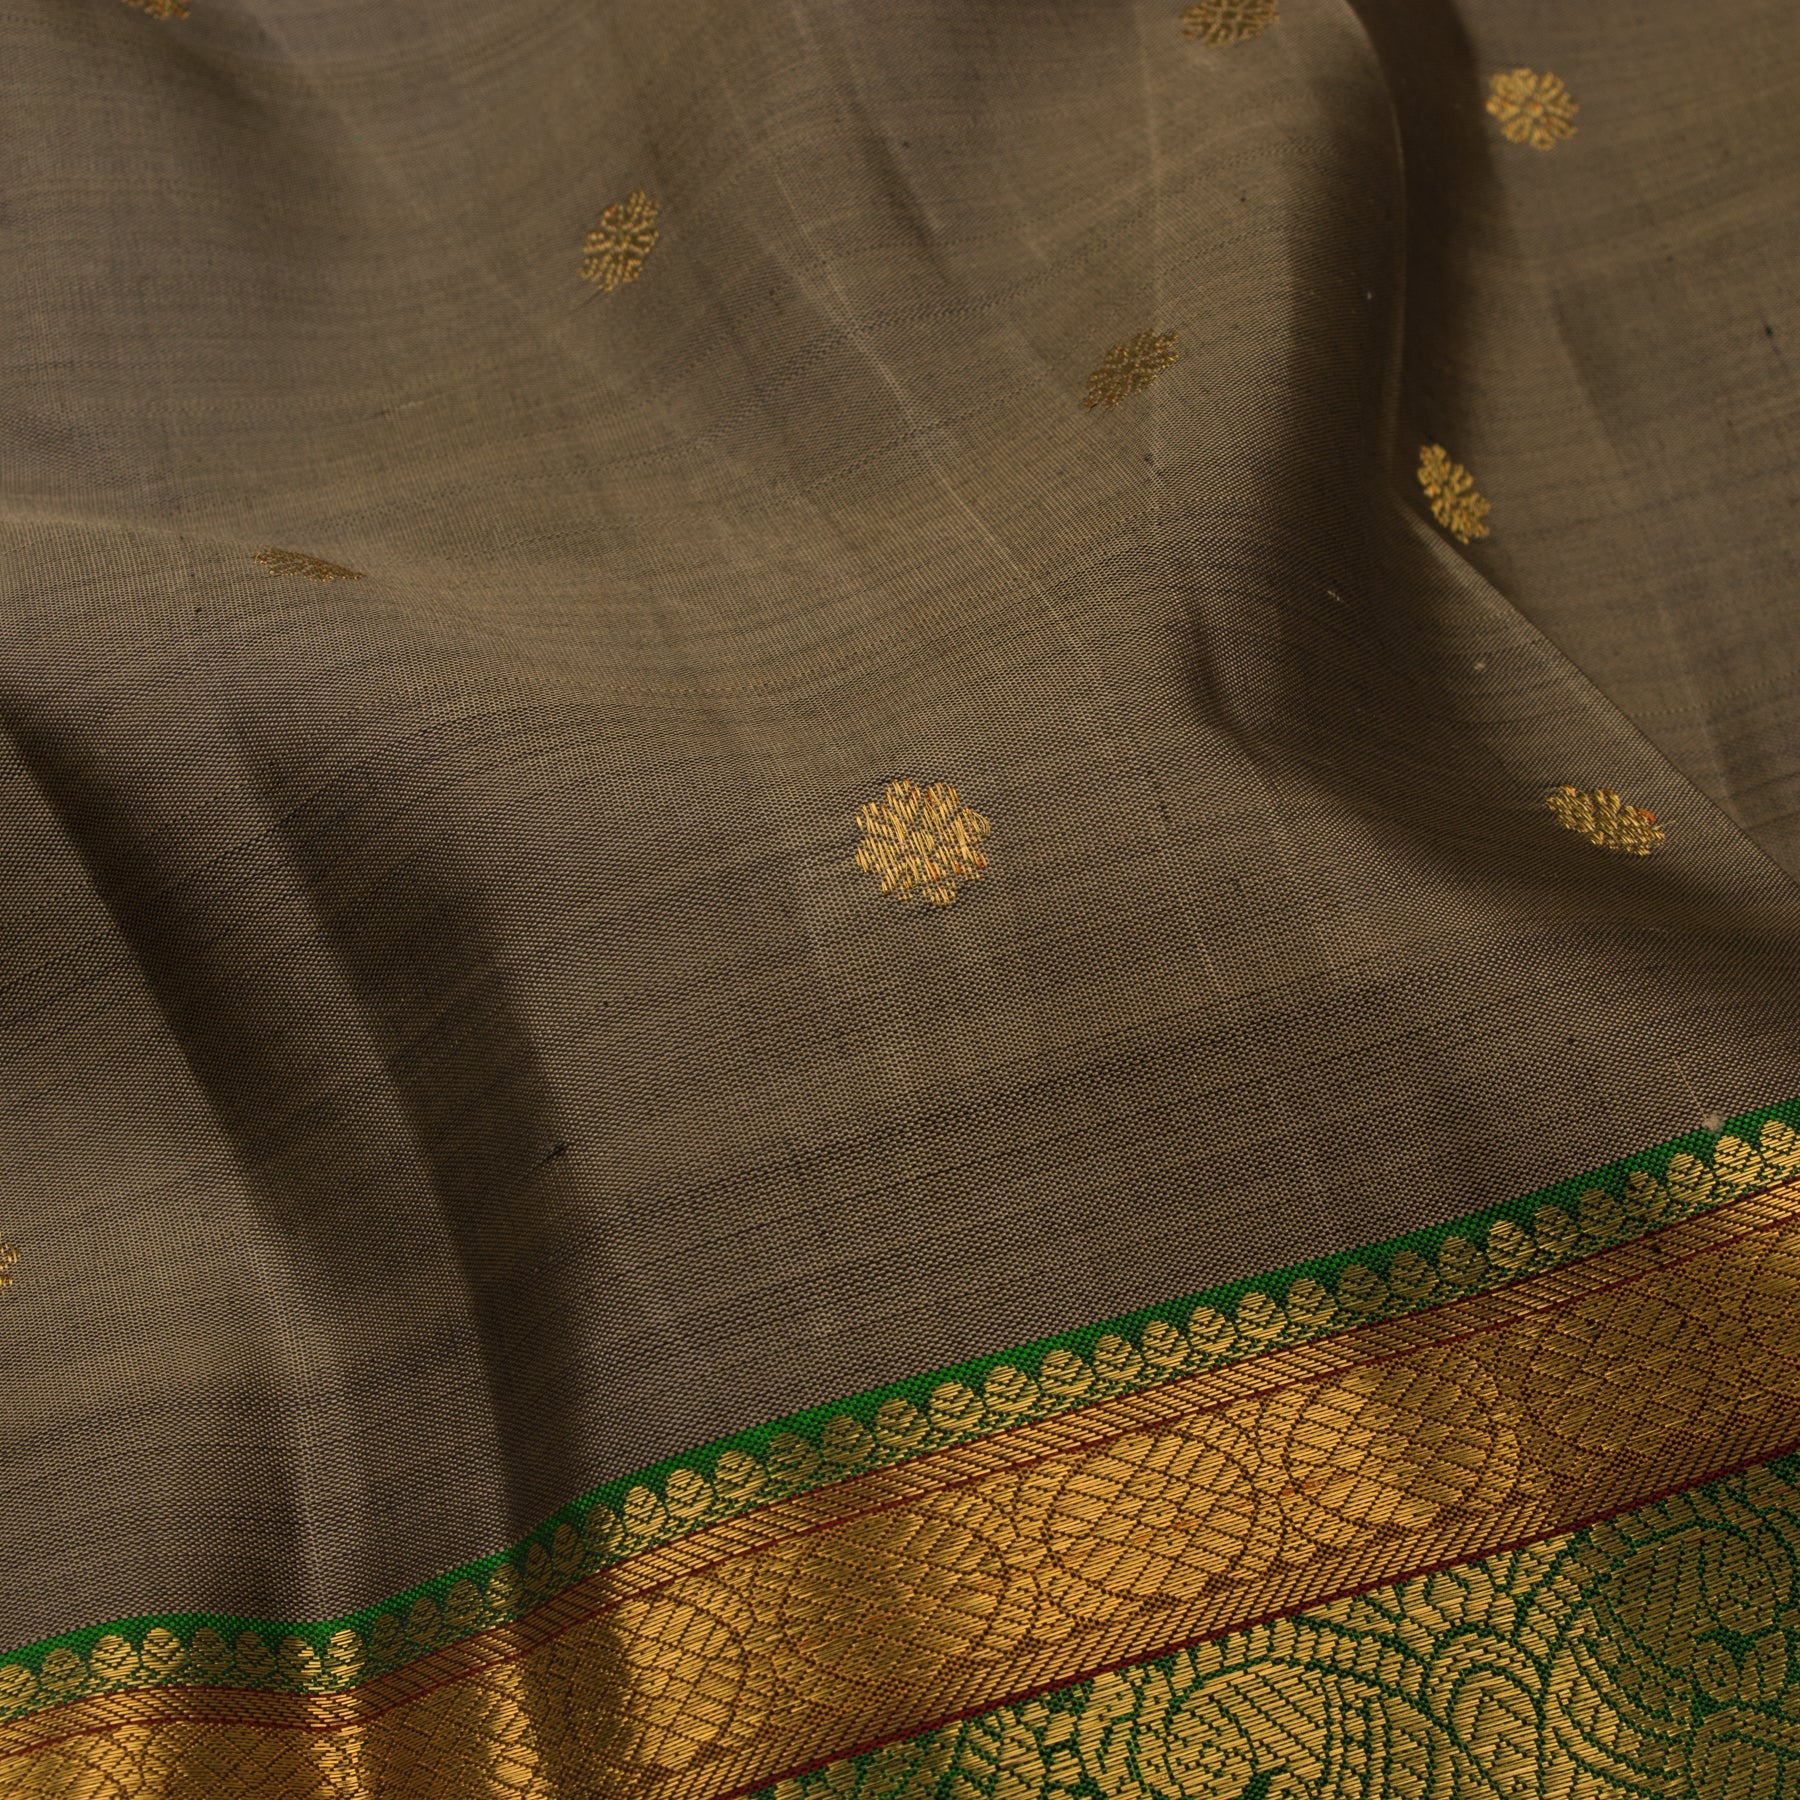 Kanakavalli Kanjivaram Silk Sari 22-110-HS001-14712 - Fabric View